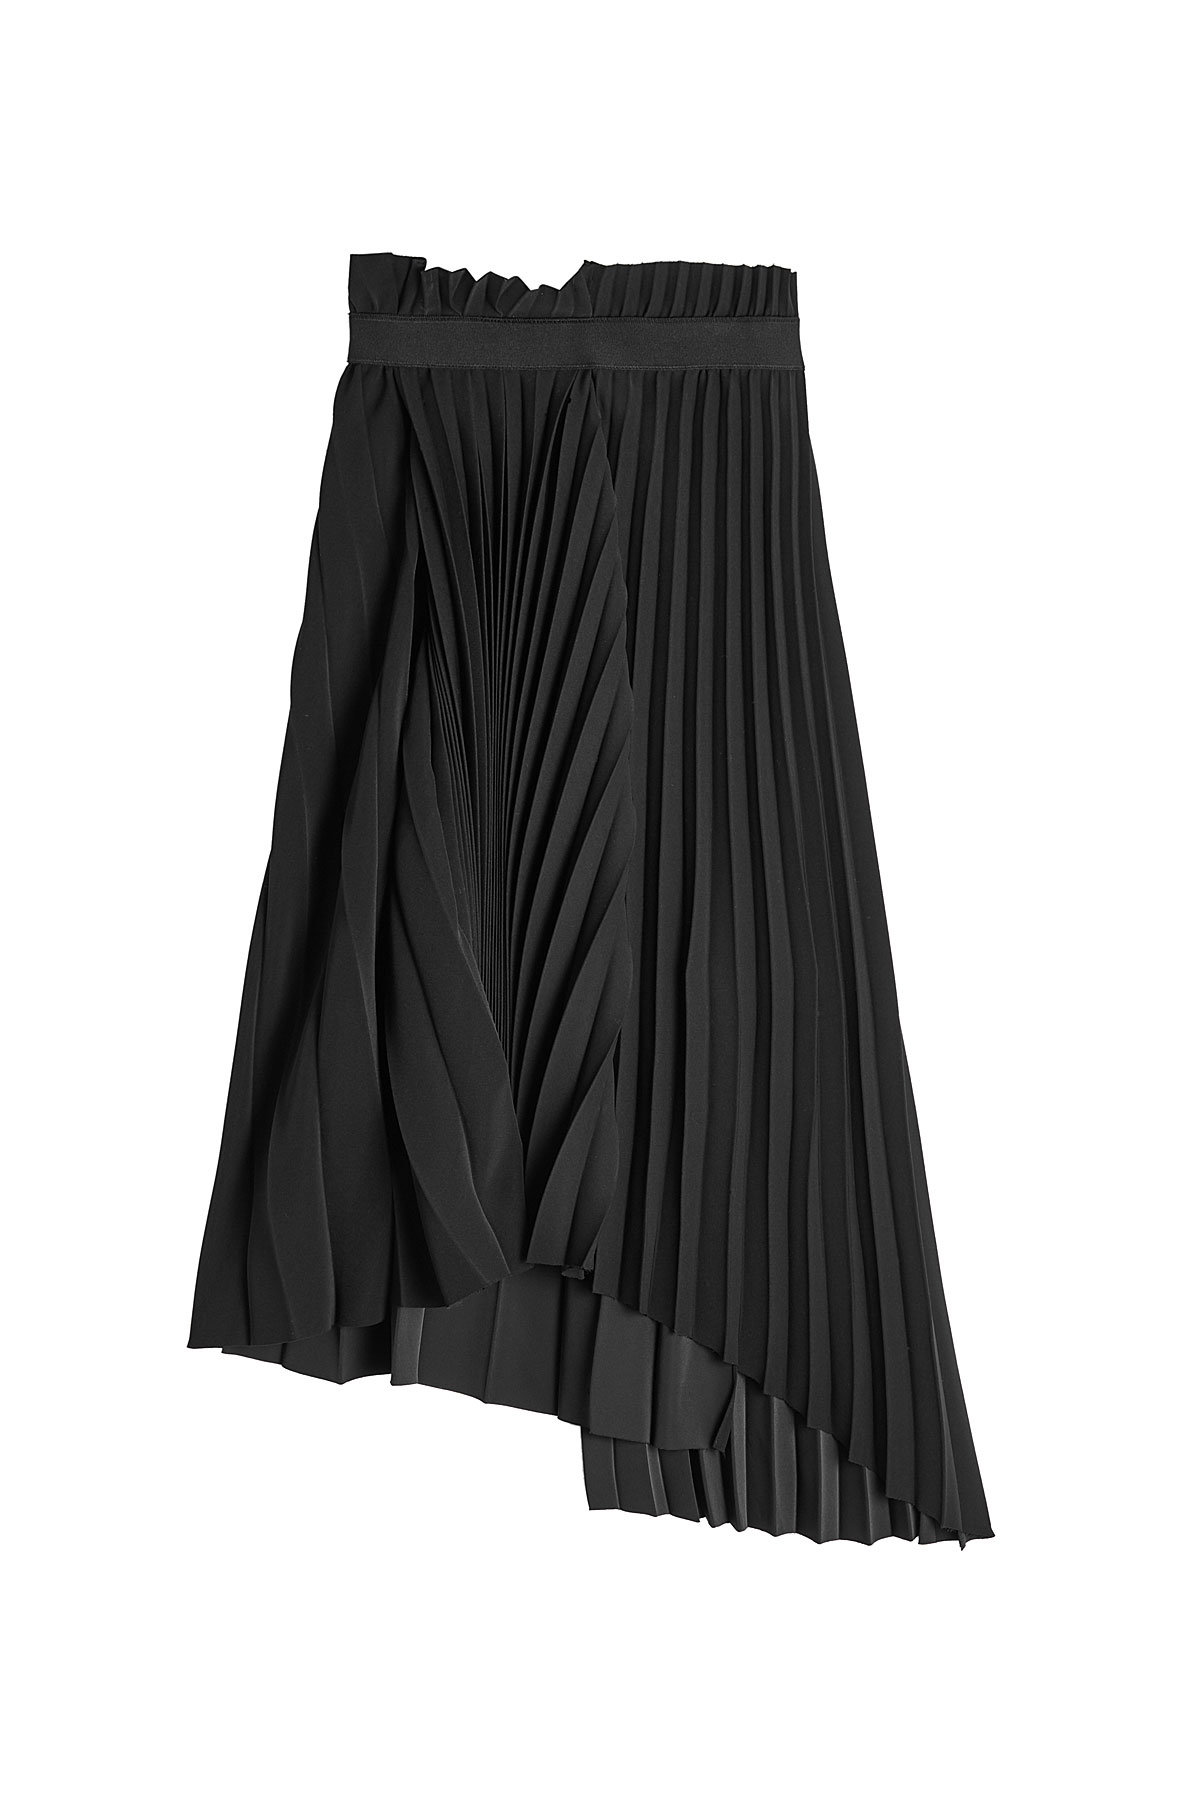 Balenciaga - Asymmetric Pleated Skirt